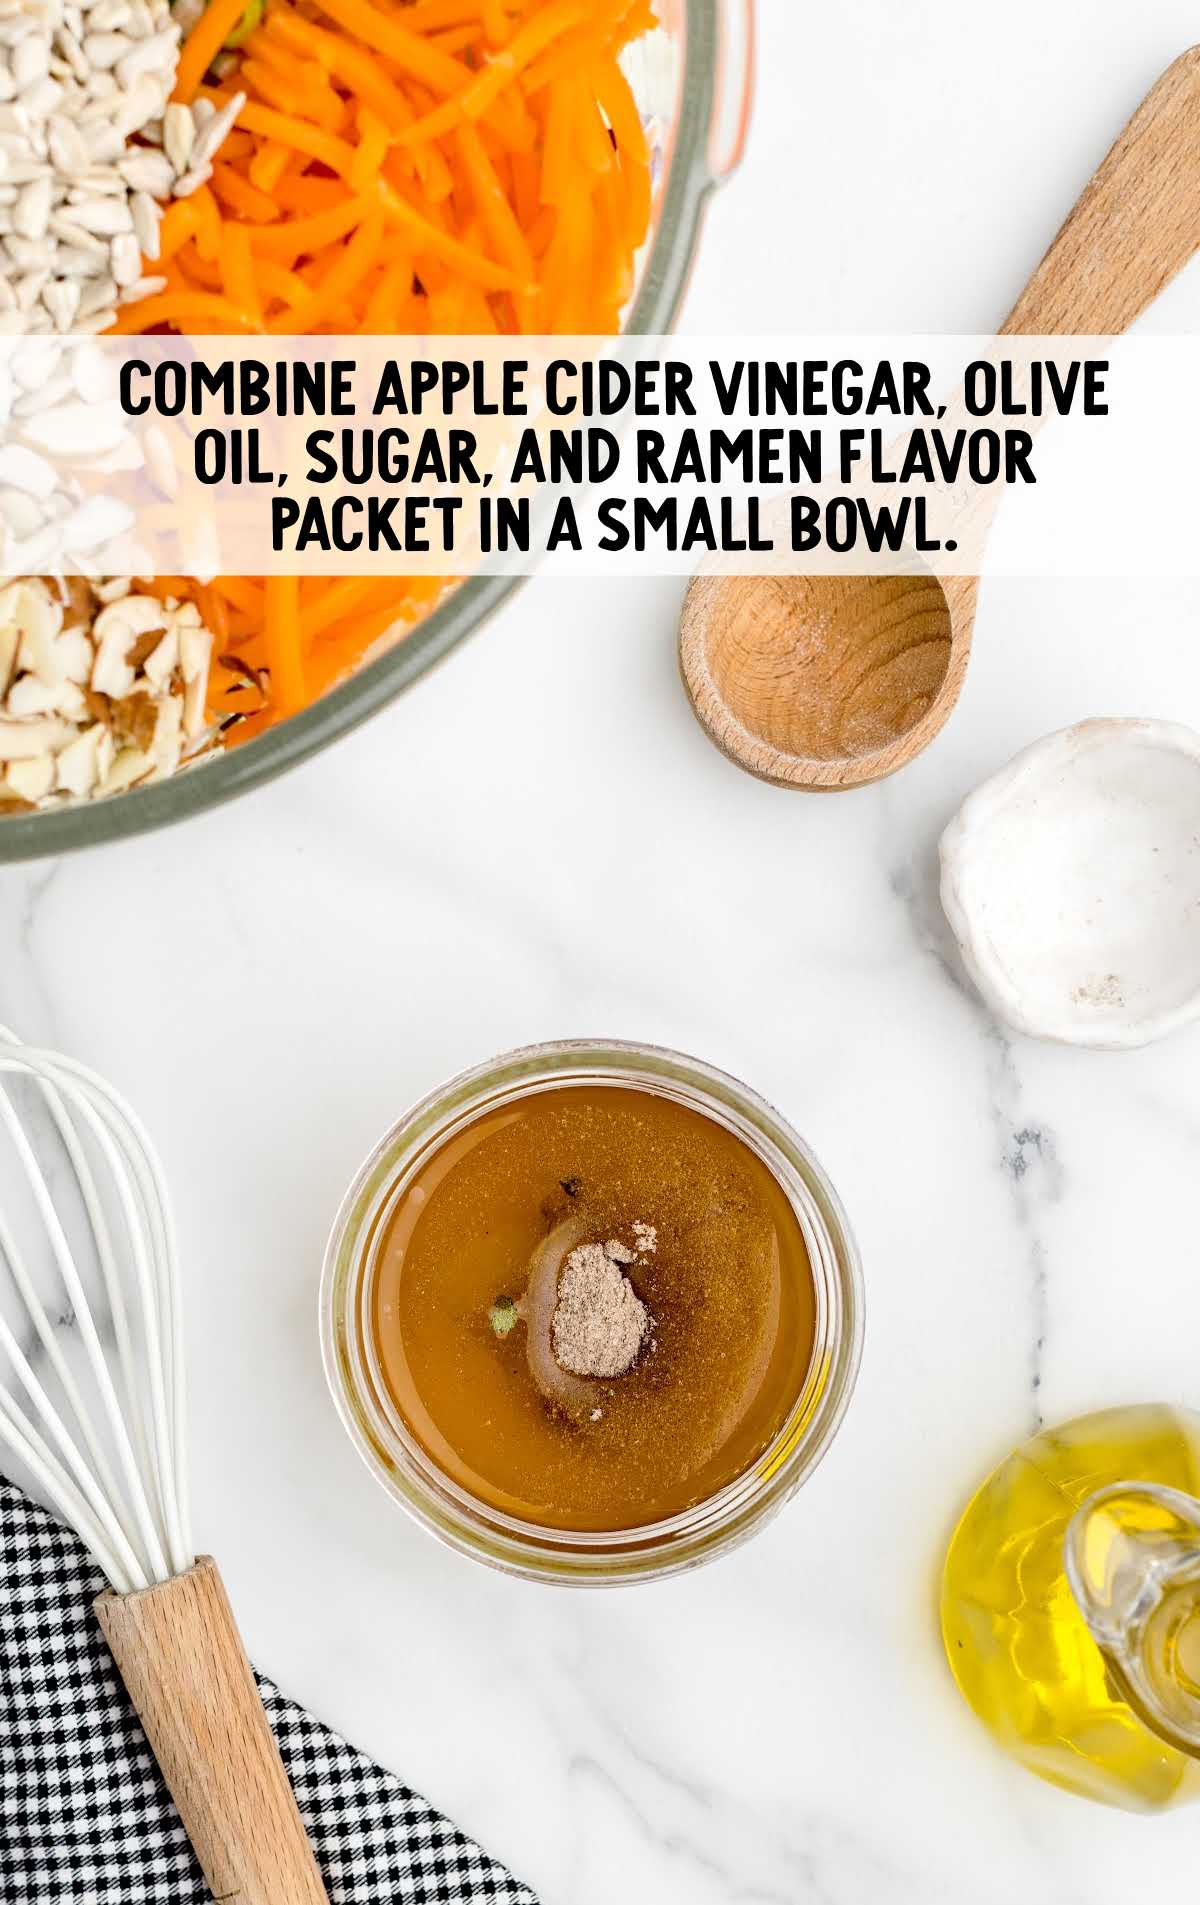 apple cider vinegar, olive oil, sugar, and ramen flavor combined